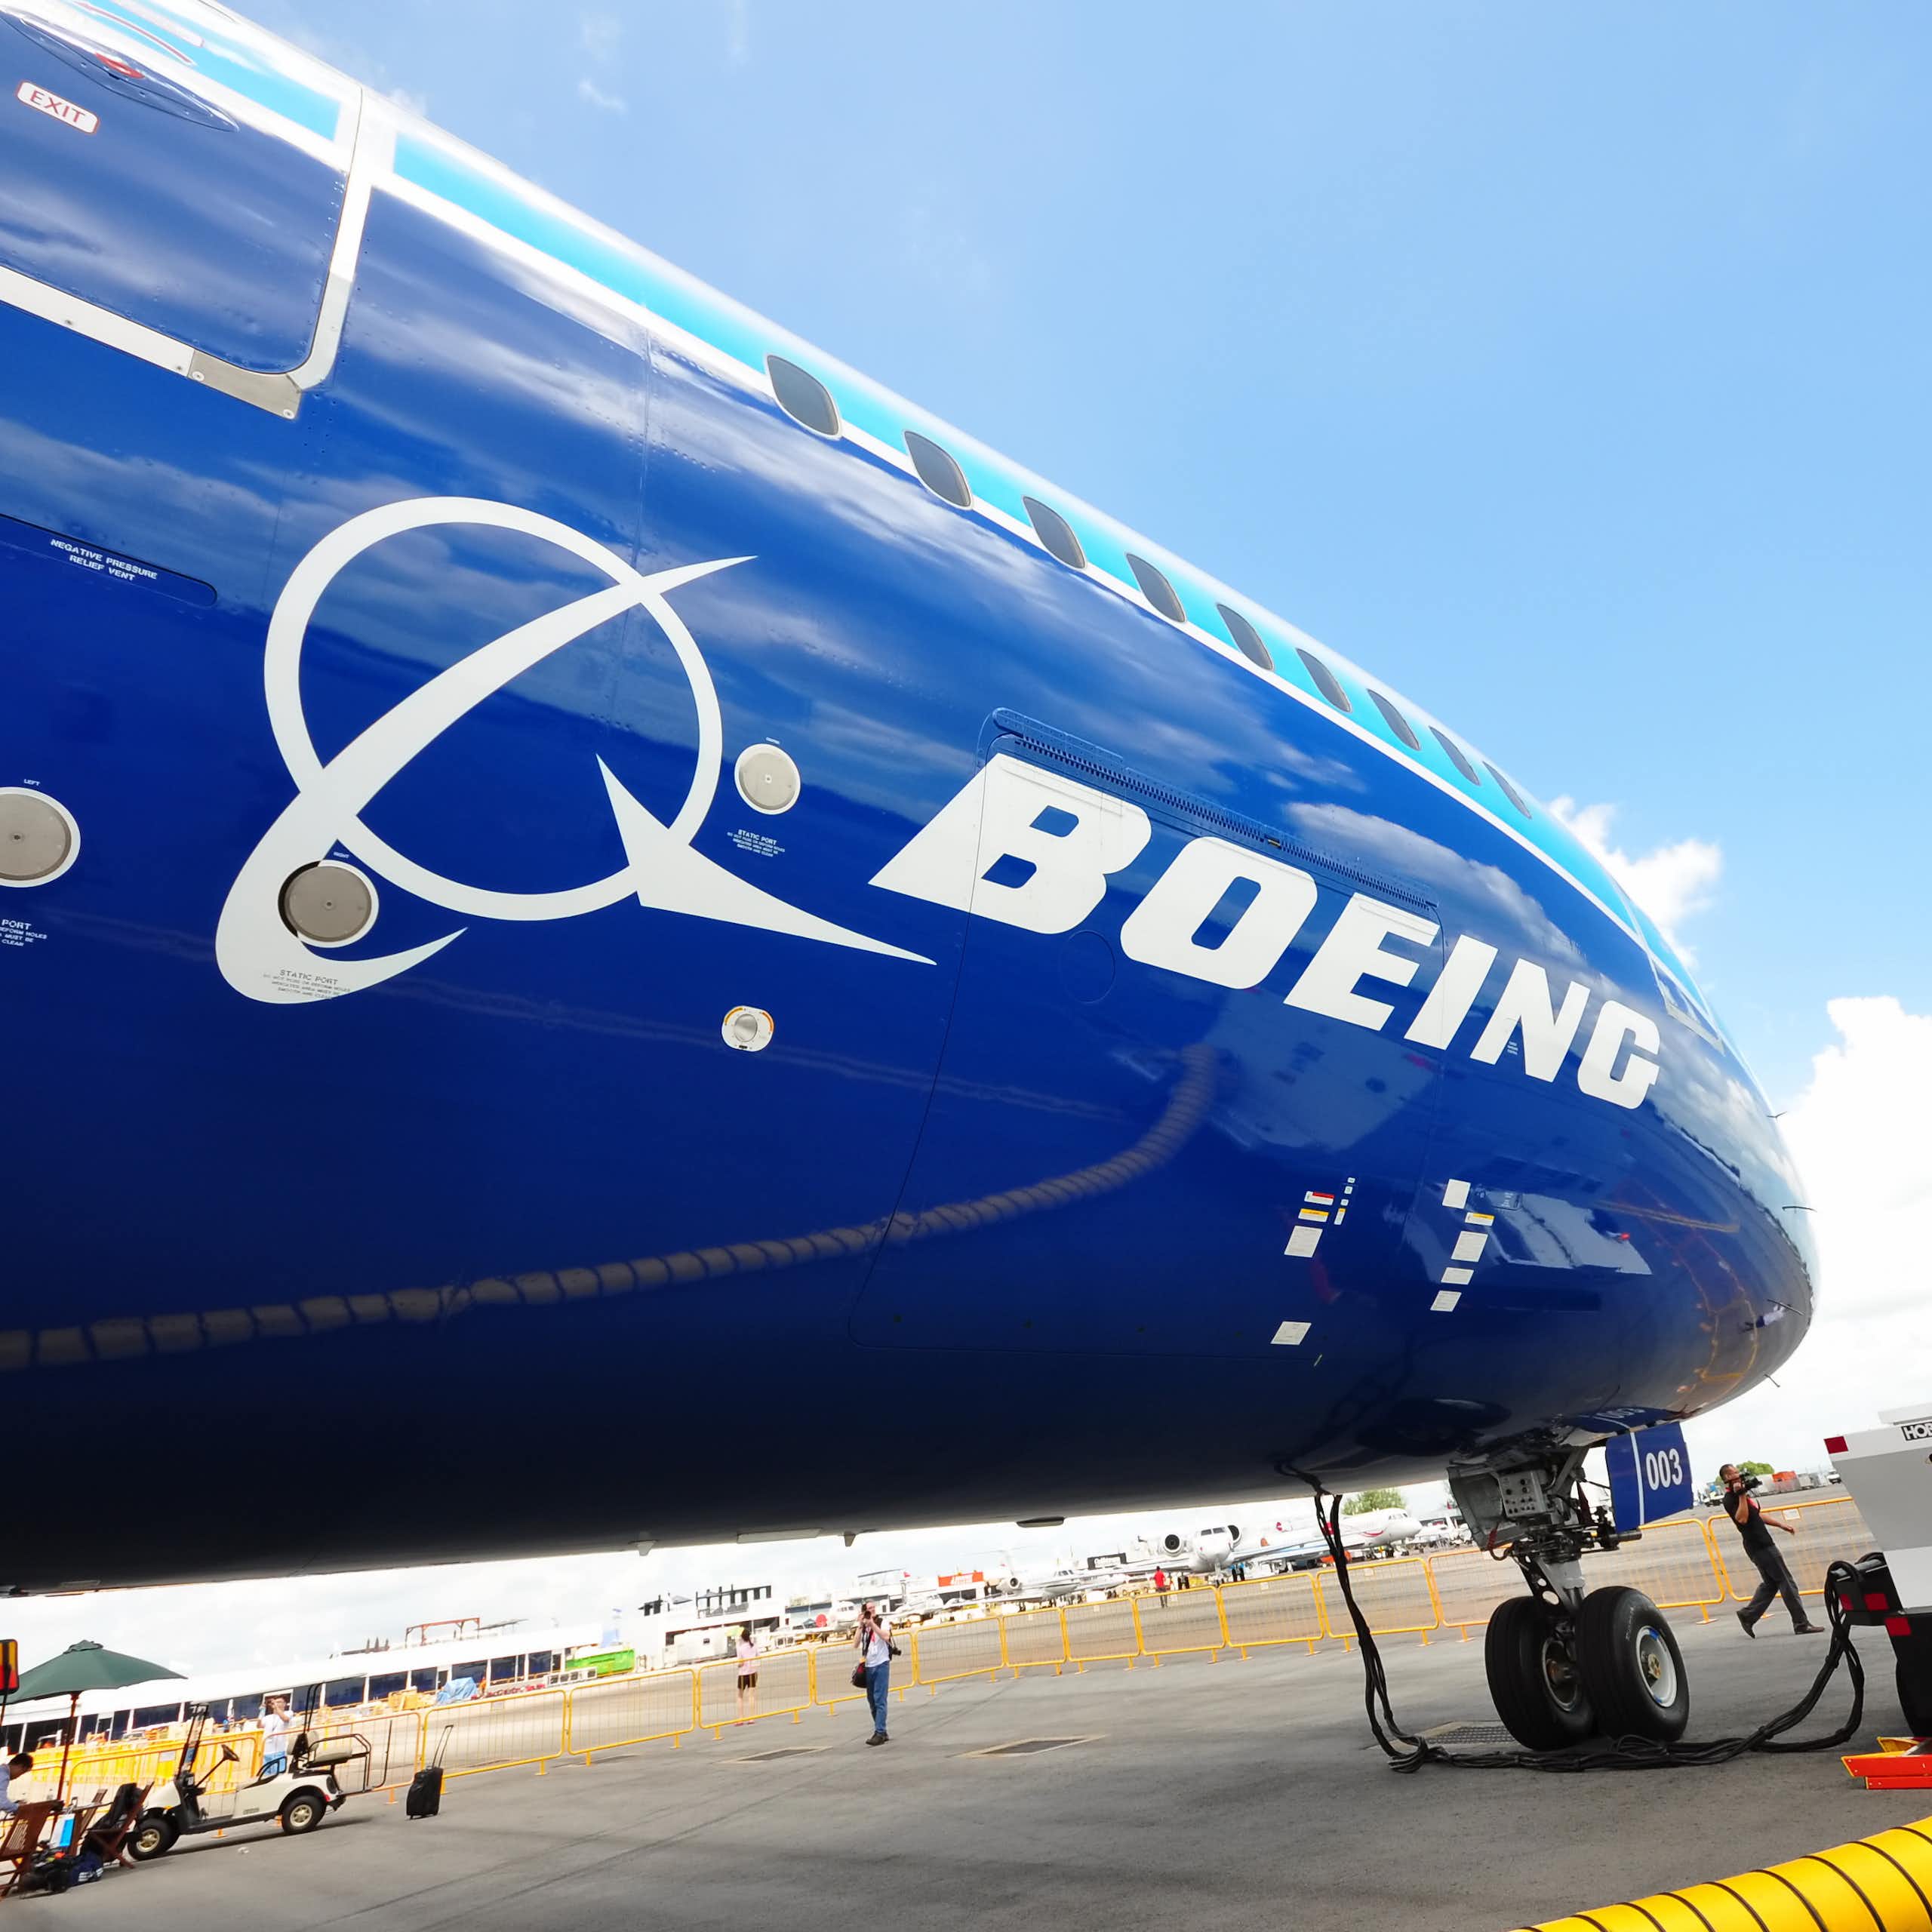 Faut-il s’inquiéter de voler dans des avions Boeing ?